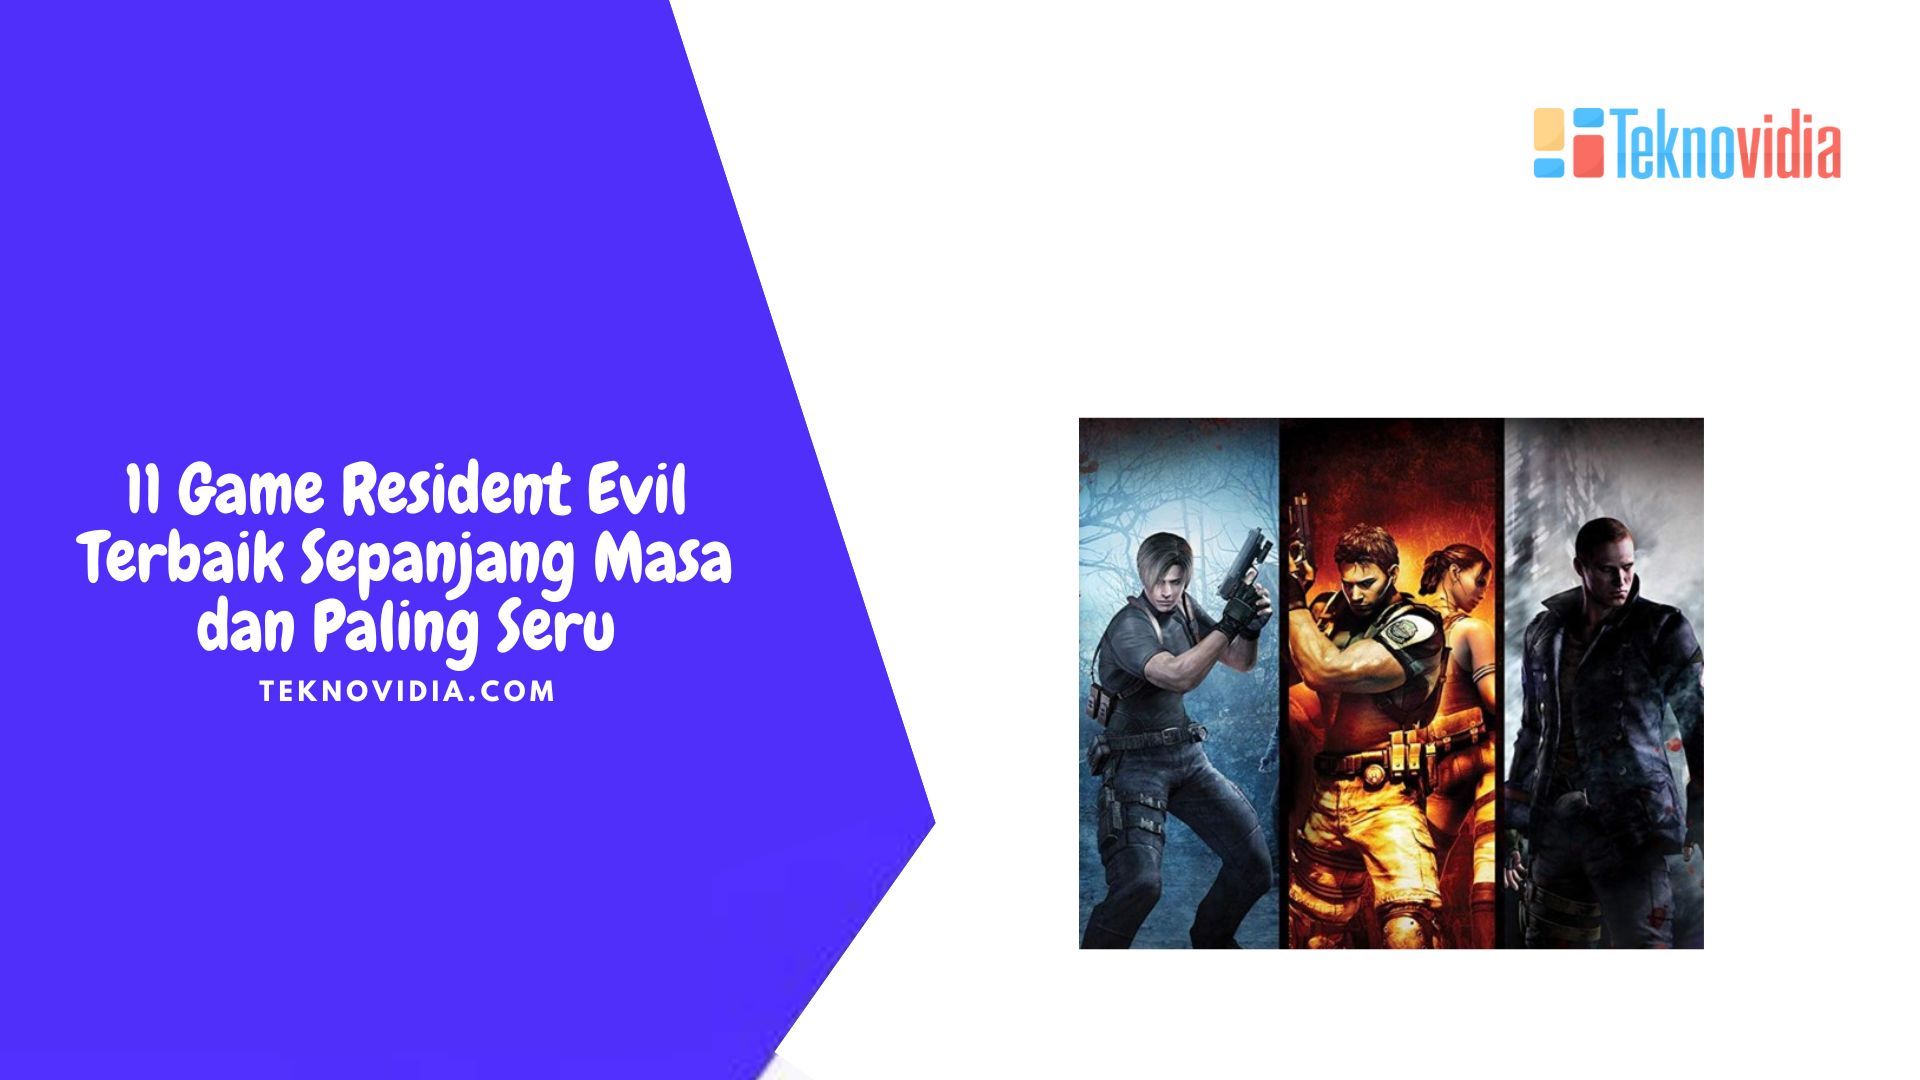 11 Game Resident Evil Terbaik Sepanjang Masa dan Paling Seru